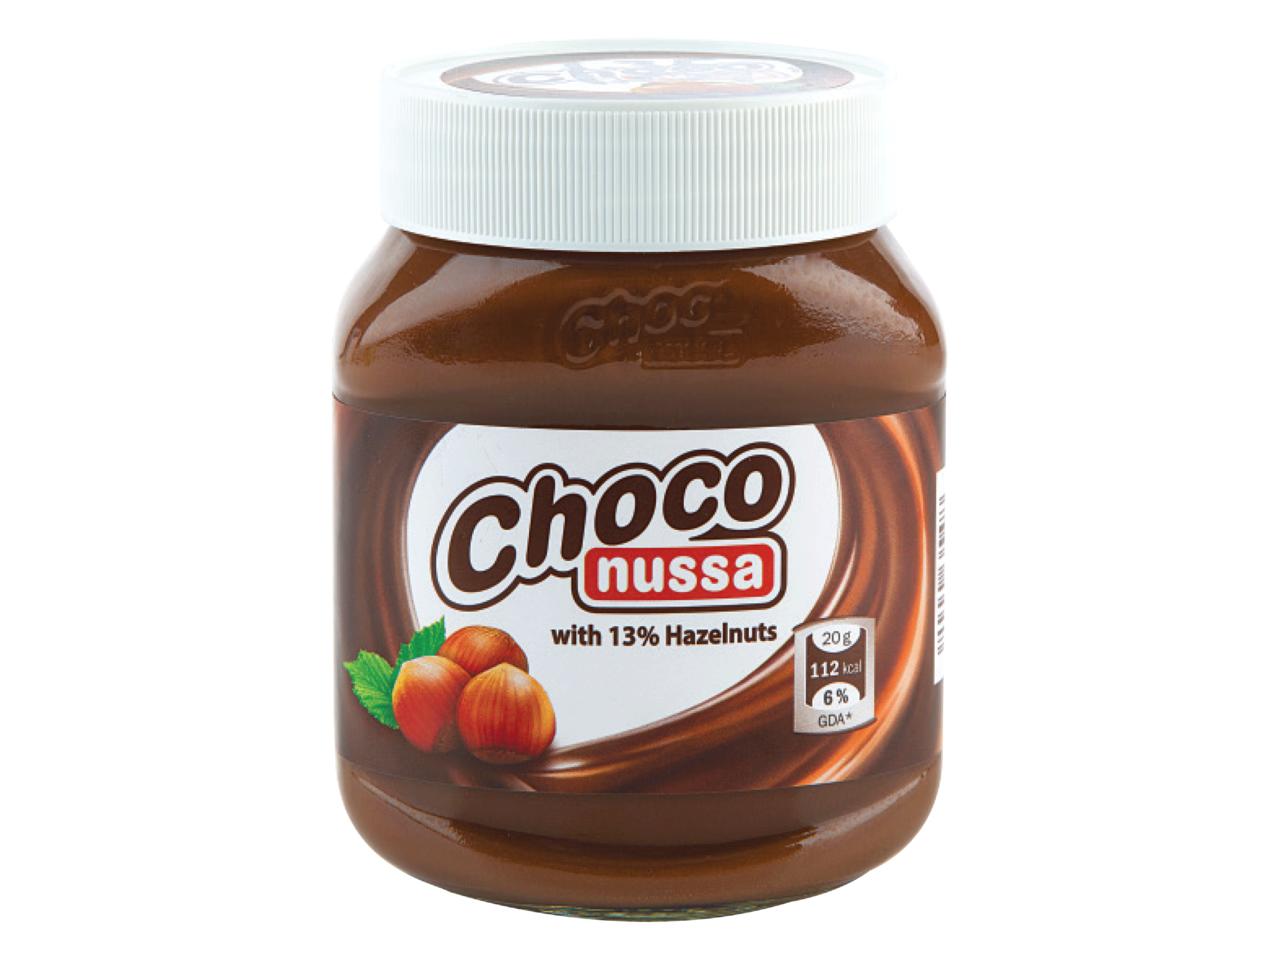 CHOCO NUSSA(R) Chocolate Hazelnut Spread